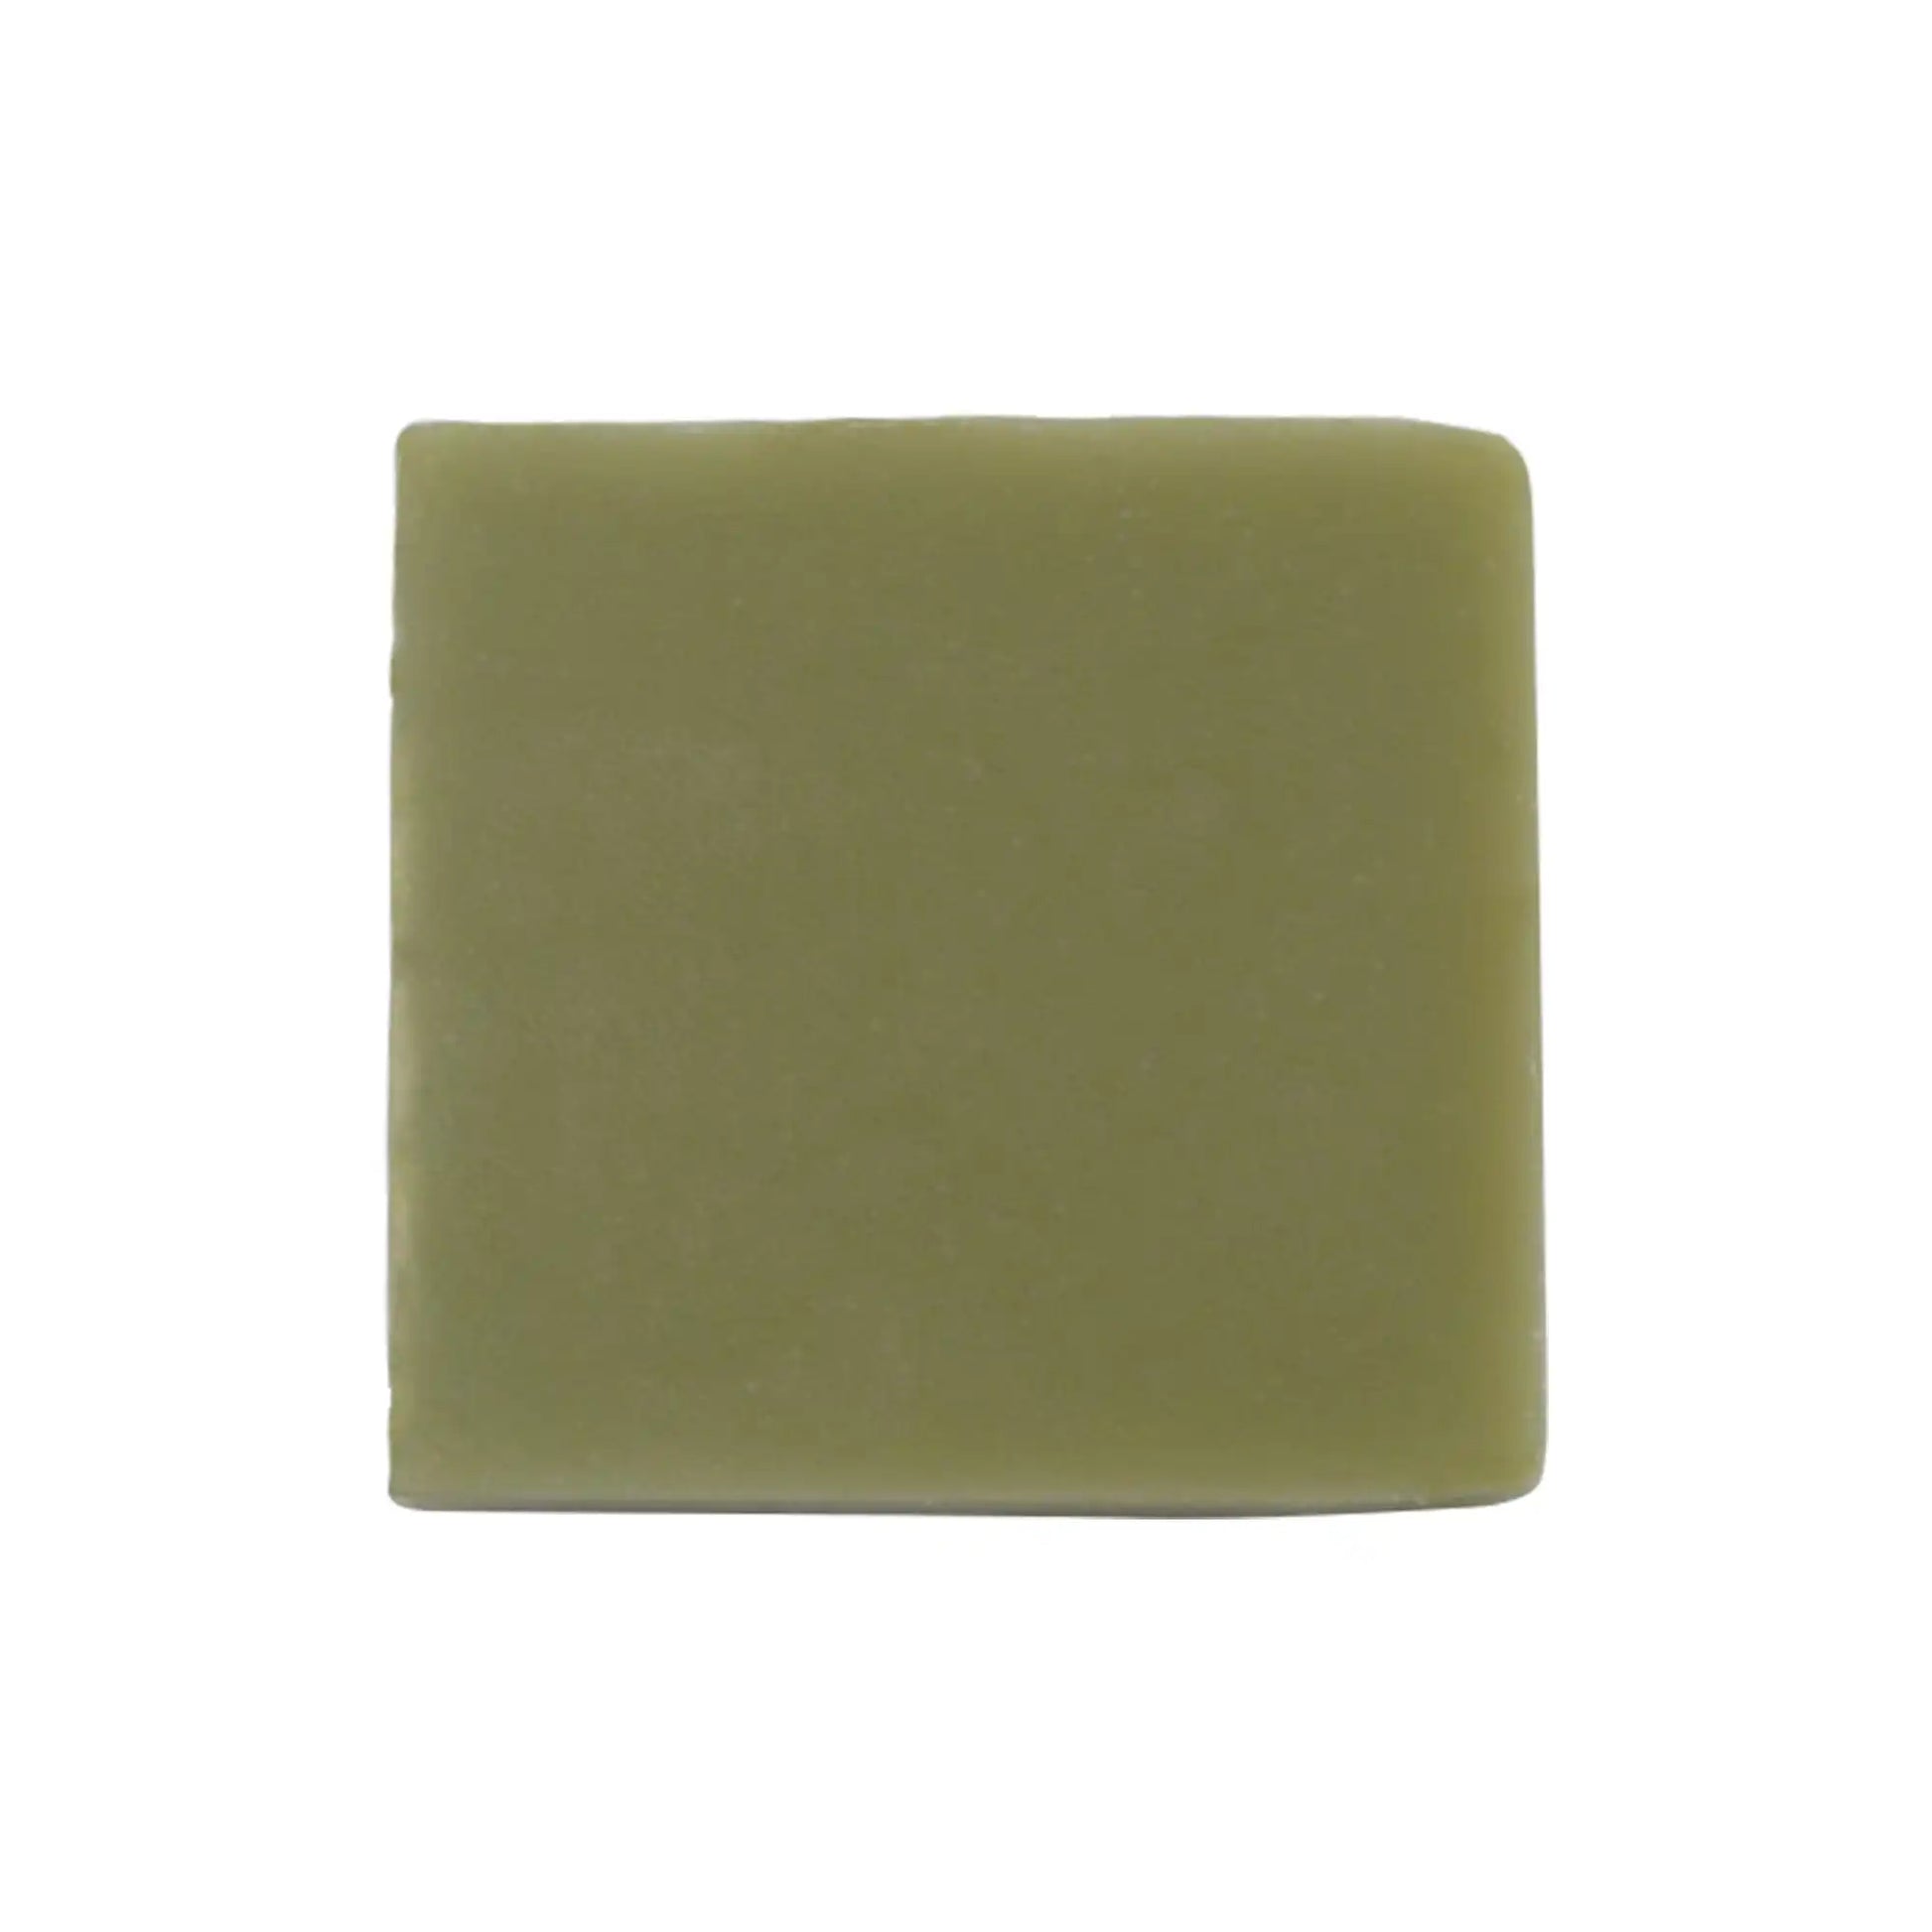 Aloe soap bar in green color